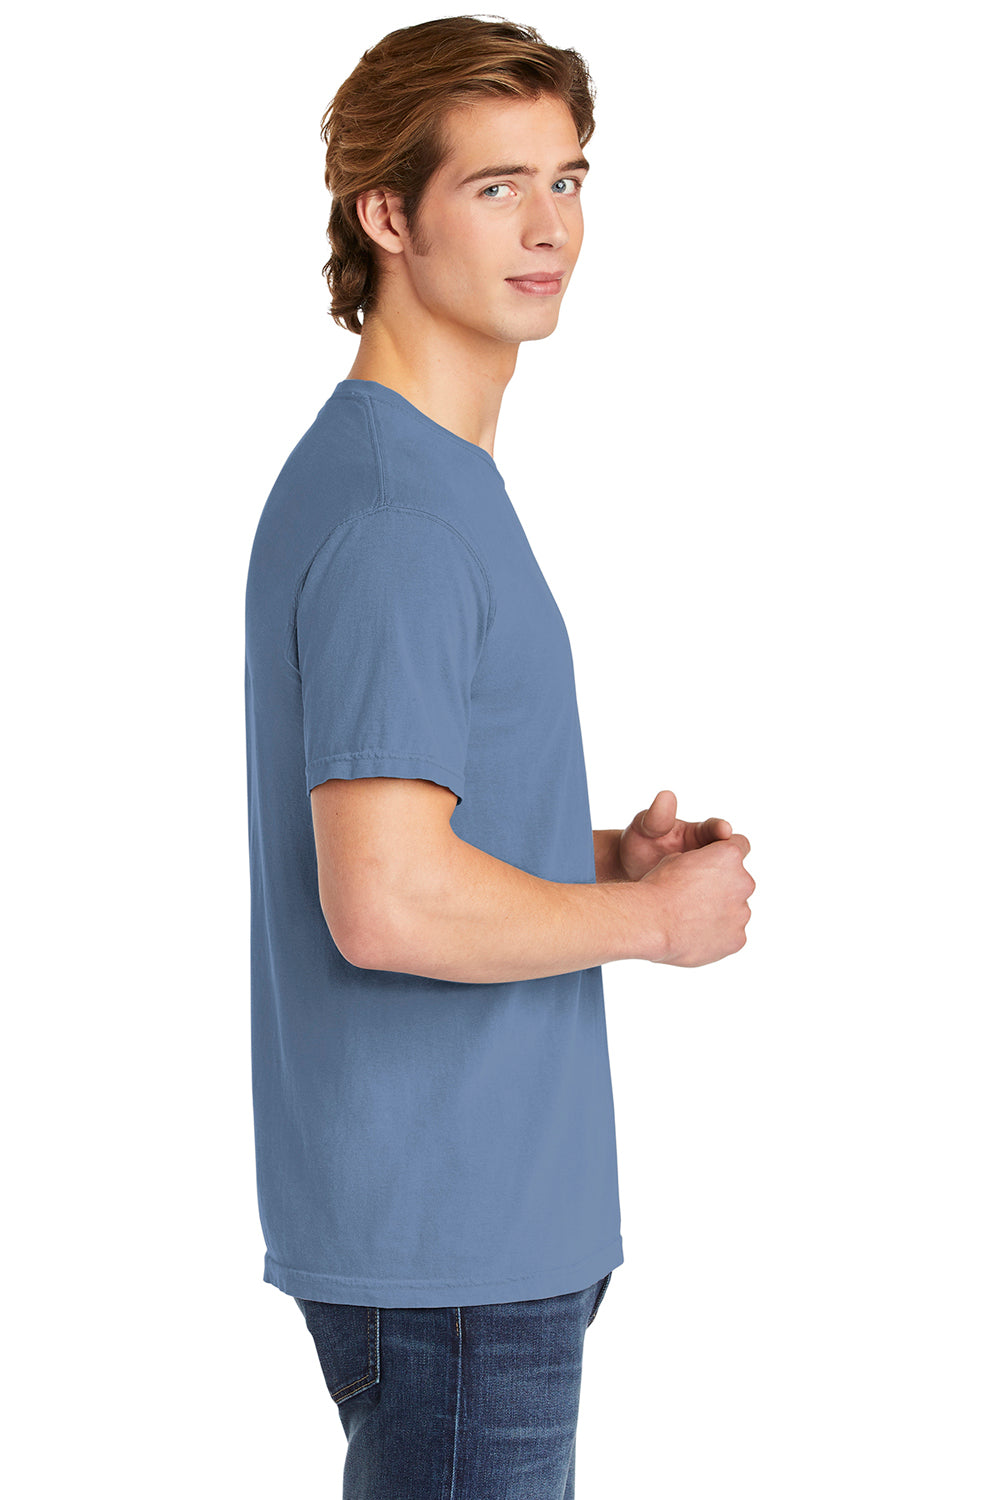 Comfort Colors 1717/C1717 Mens Short Sleeve Crewneck T-Shirt Washed Denim Blue Side